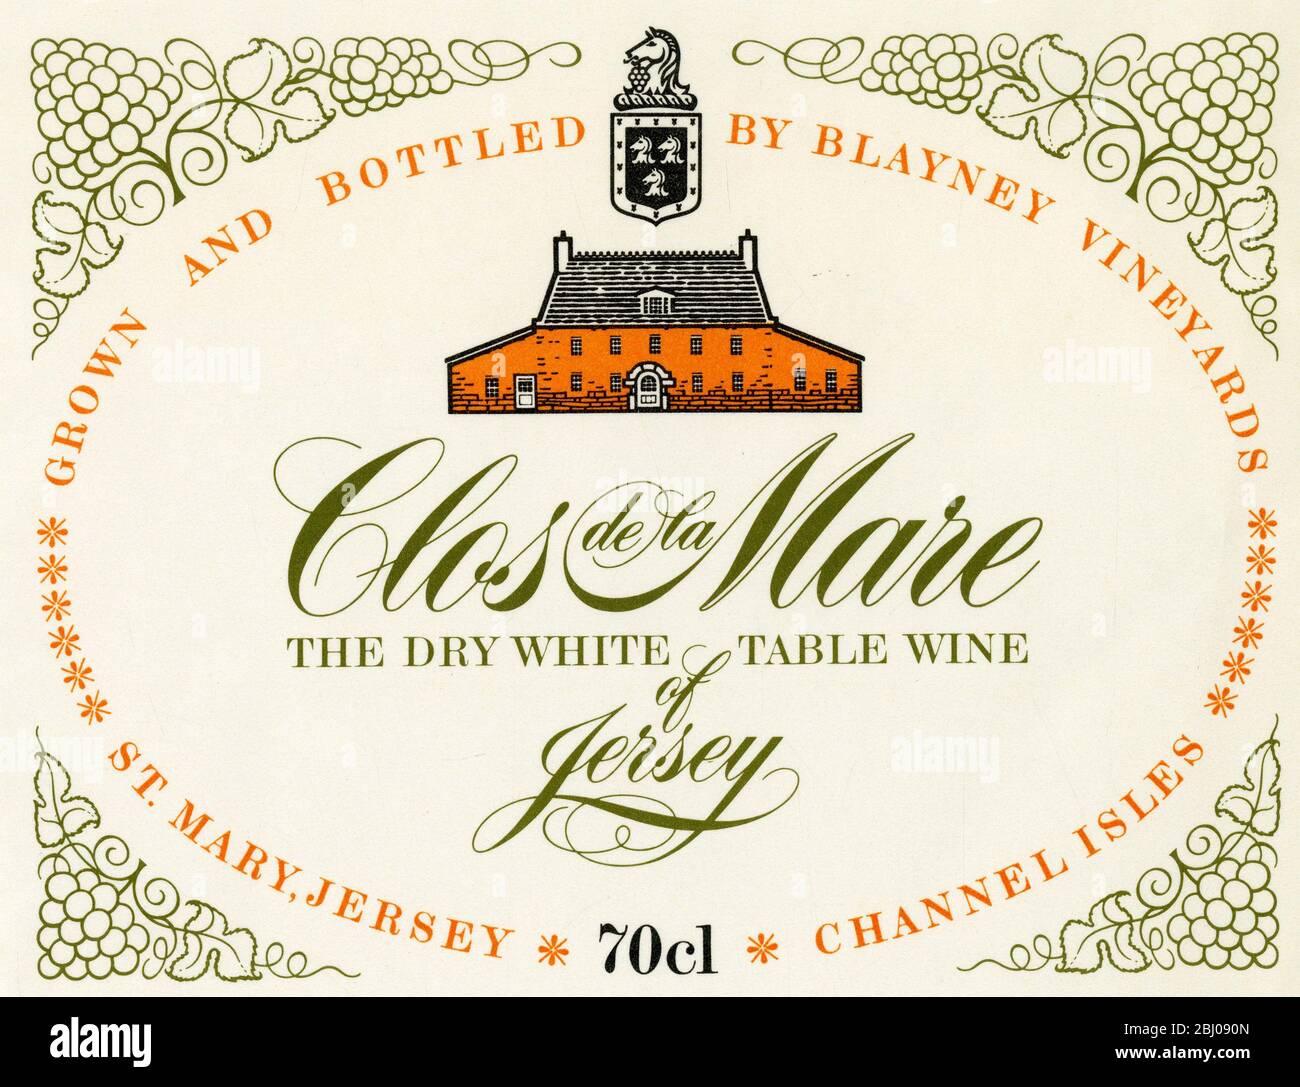 Weinetikett - Clos de la Mare Dry White Table Wine. Angebaut und abgefüllt von Blayney Vineyards, St Mary, Jersey. - 1975 - Stockfoto